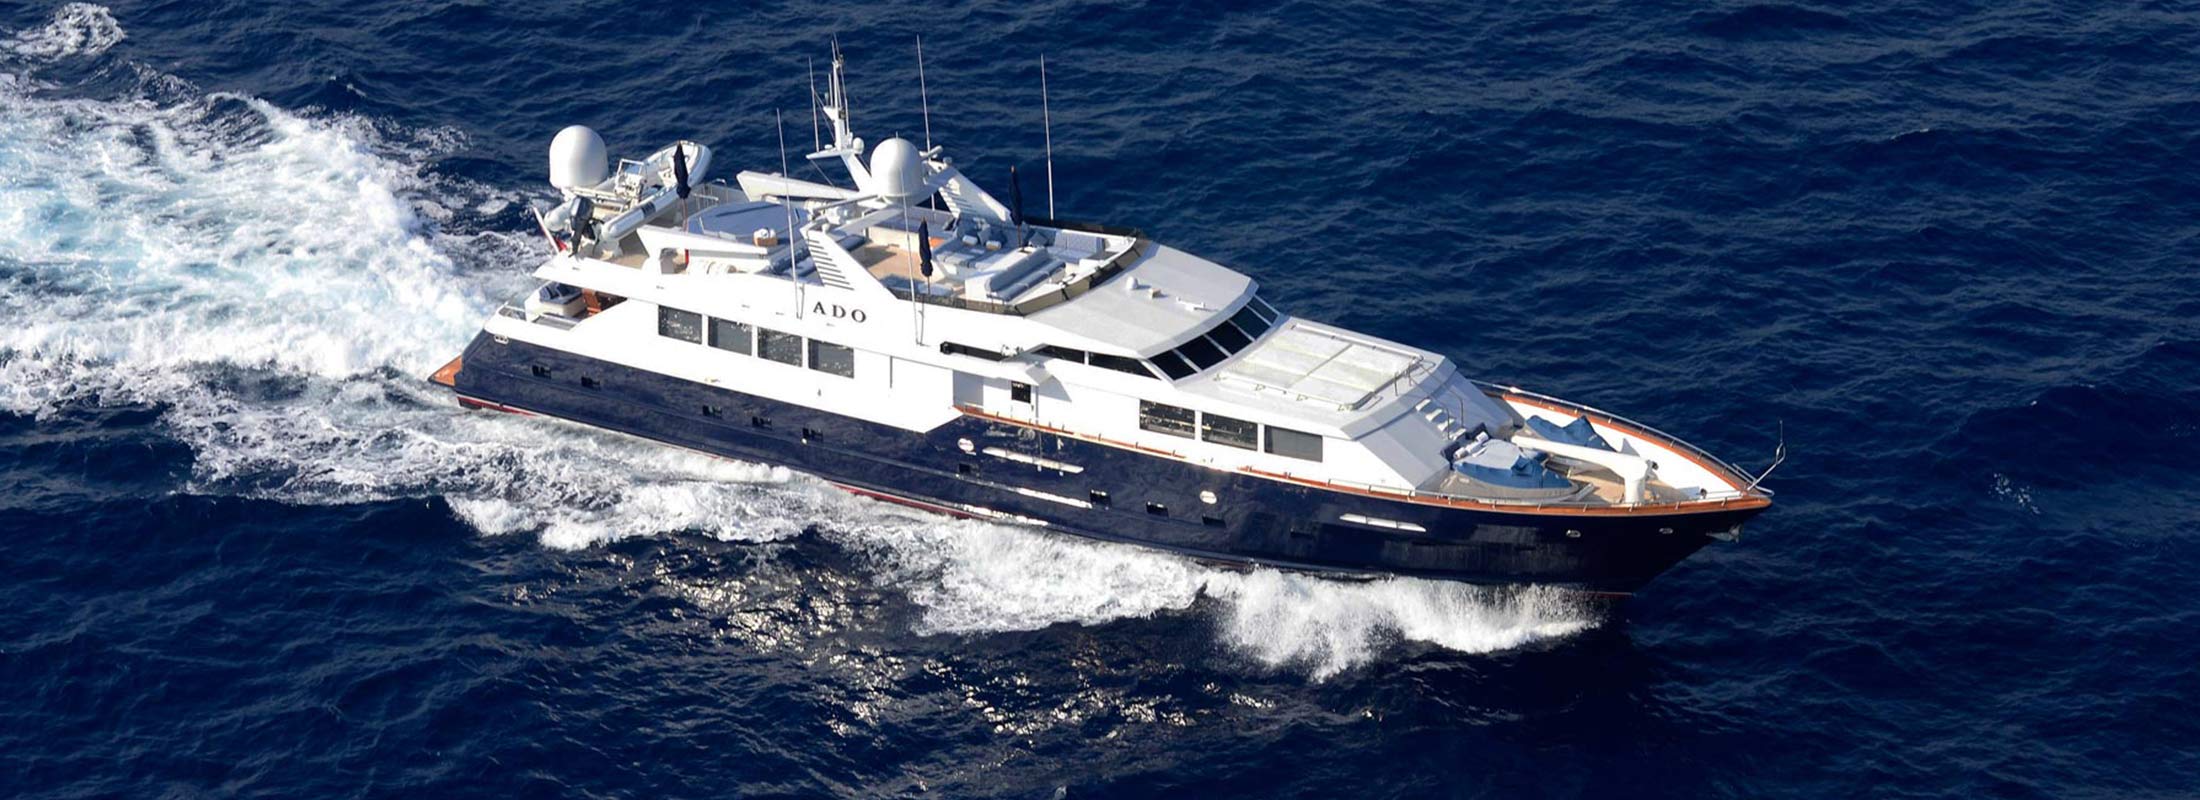 Doa Motor Yacht for Charter Mediterranean slider 1